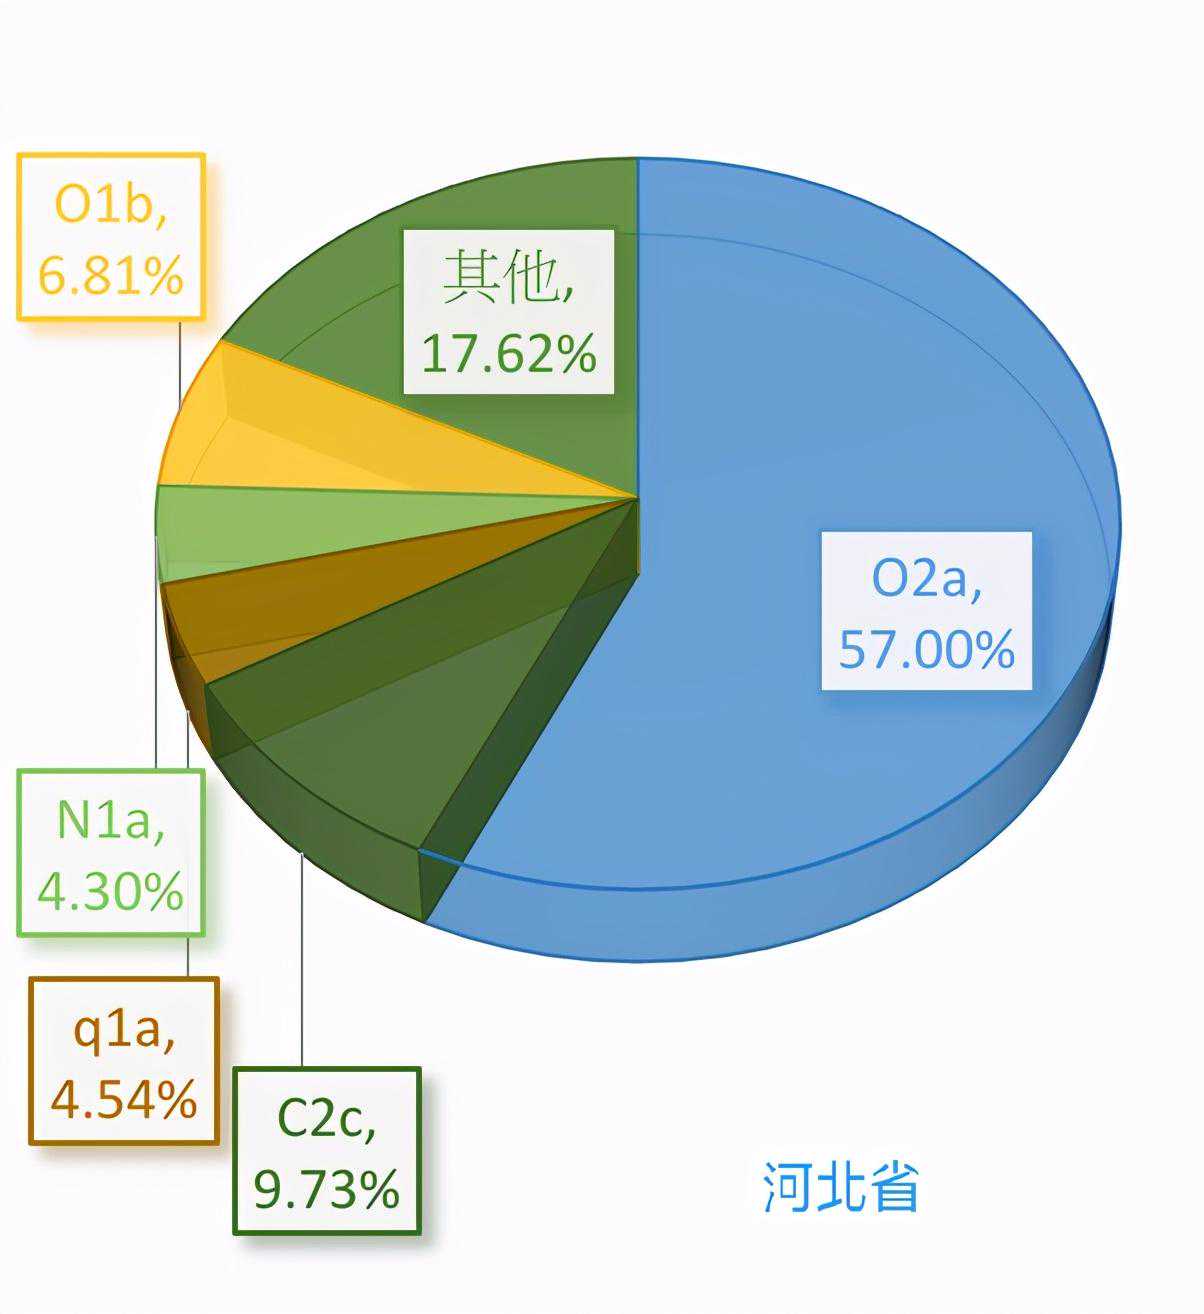 中国各省区的父系DNA比例：哪些省出乎你的意料了？